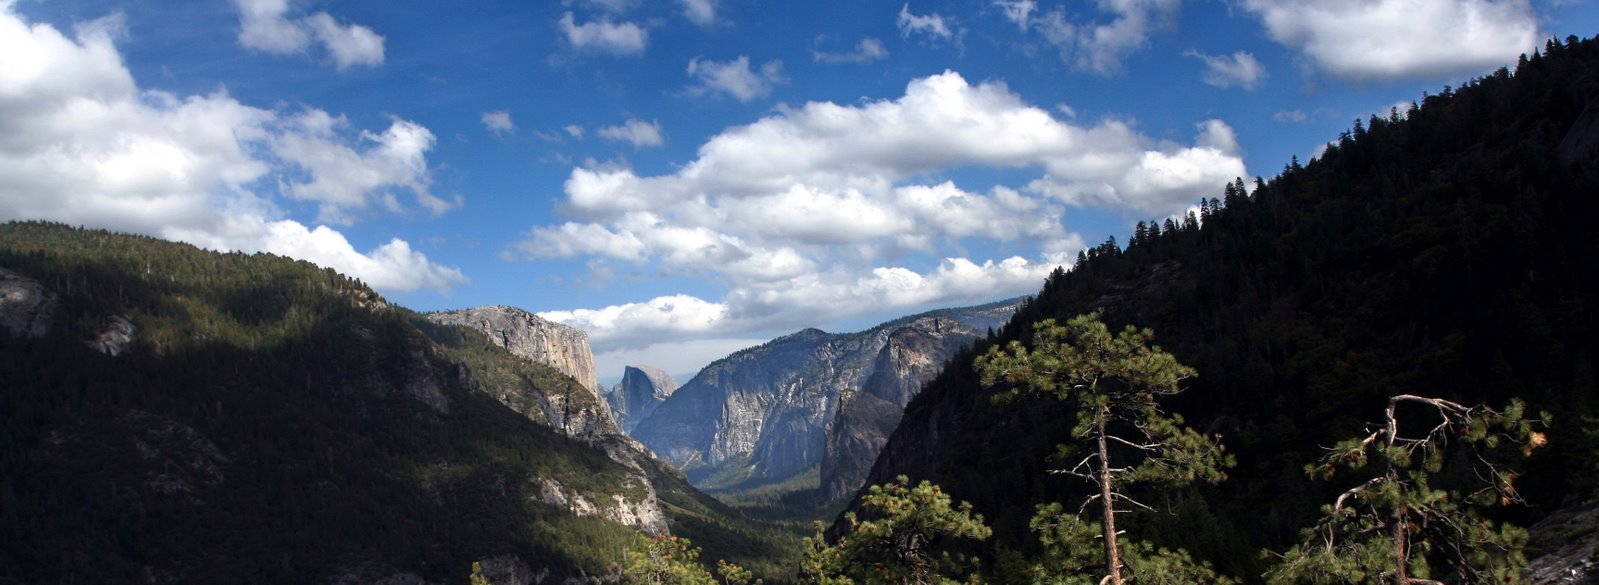 [Bar+Trip+2704b+-+Yosemite+National+Park.jpg]